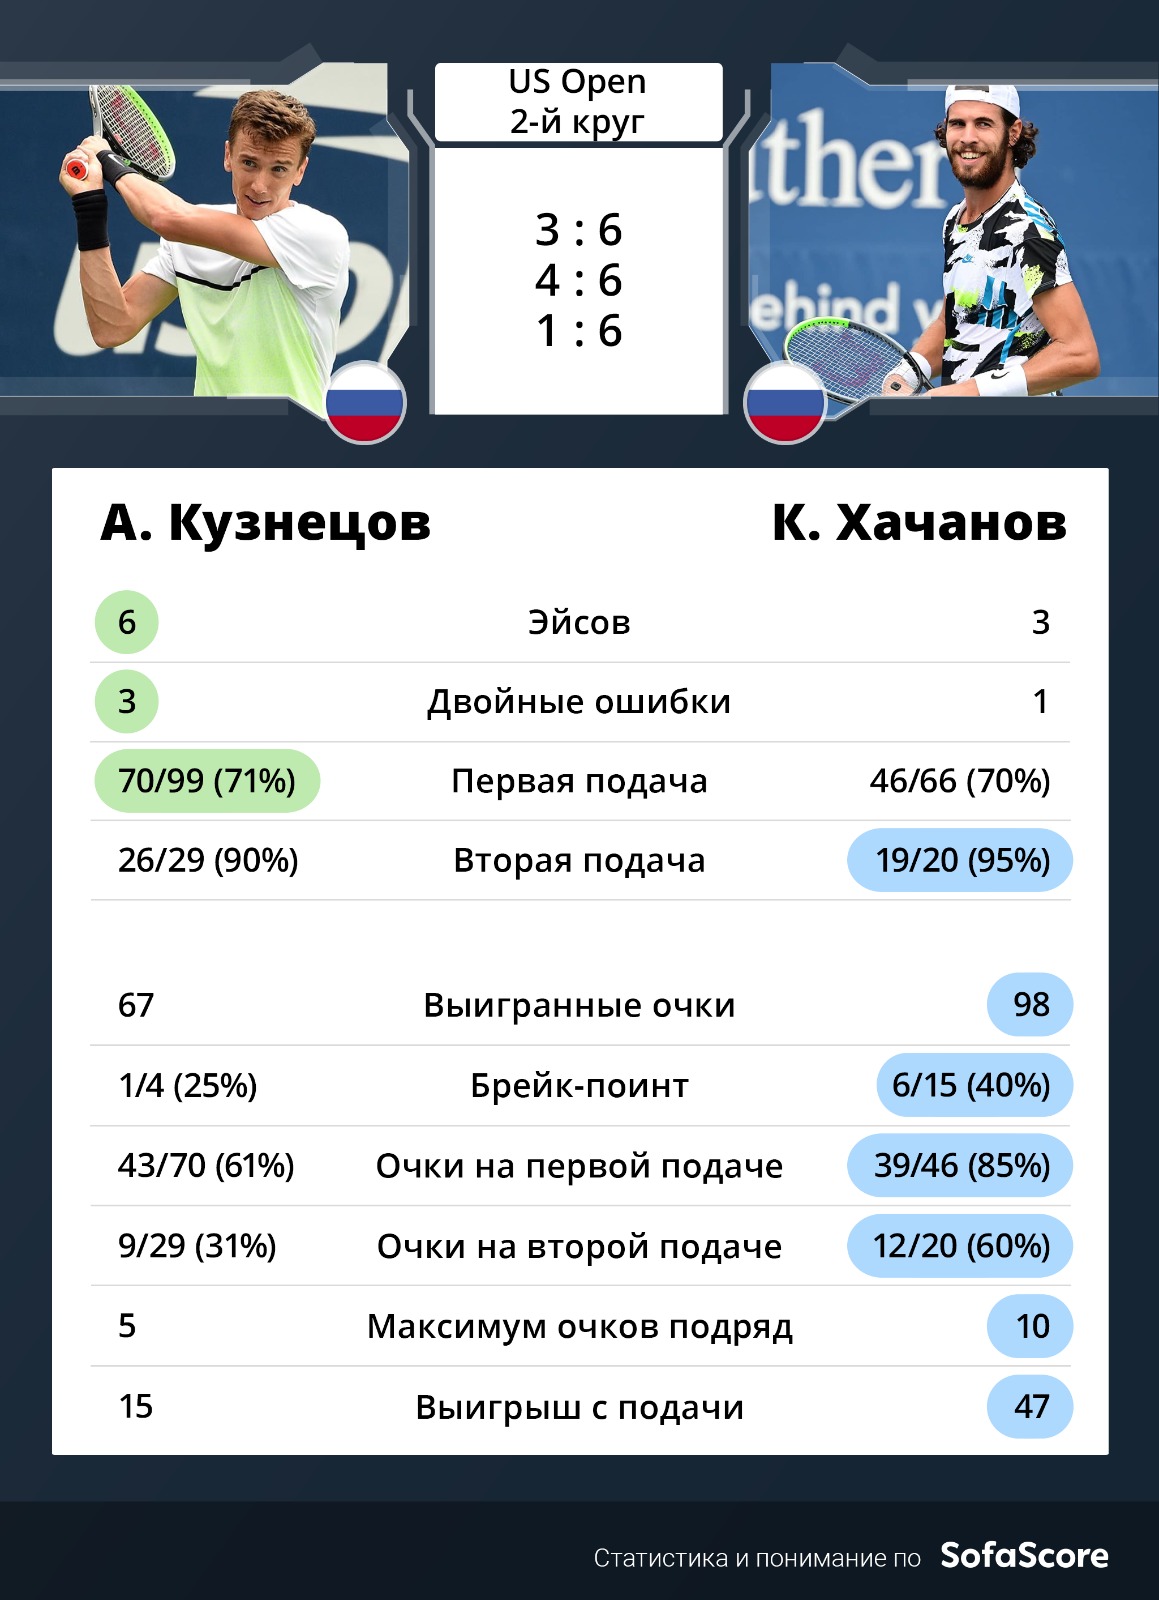 Теннисист Хачанов повторил свой лучший результат на US Open